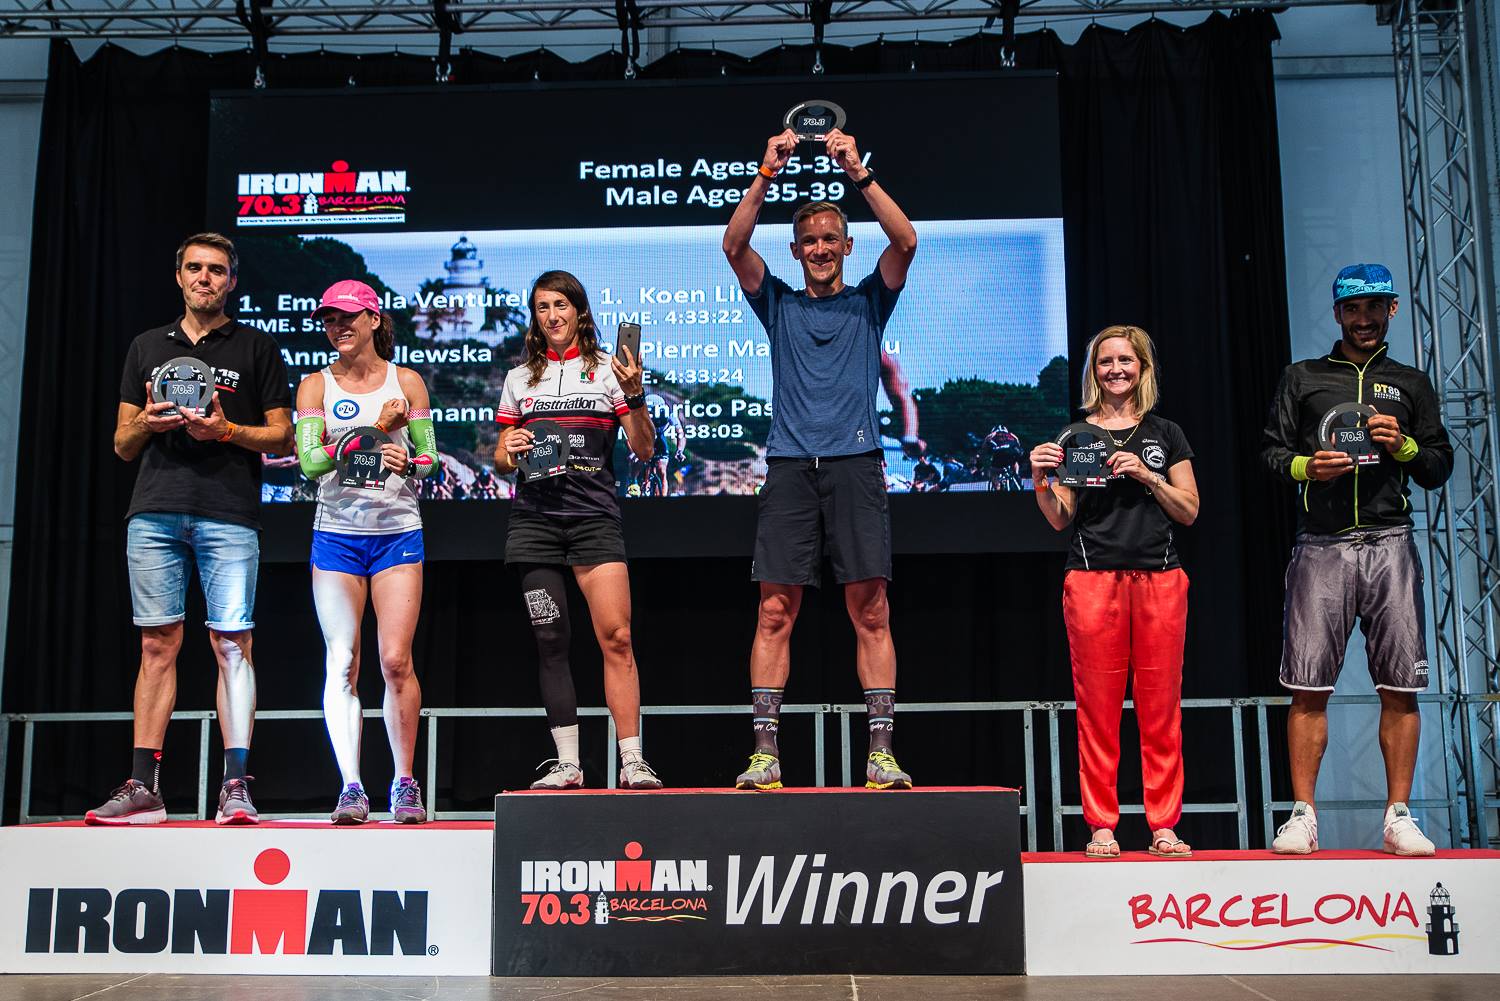 Emanuela Venturelli sul gradino più alto del podio di categoria W35-39 all'Ironman 70.3 Barcelona 2018